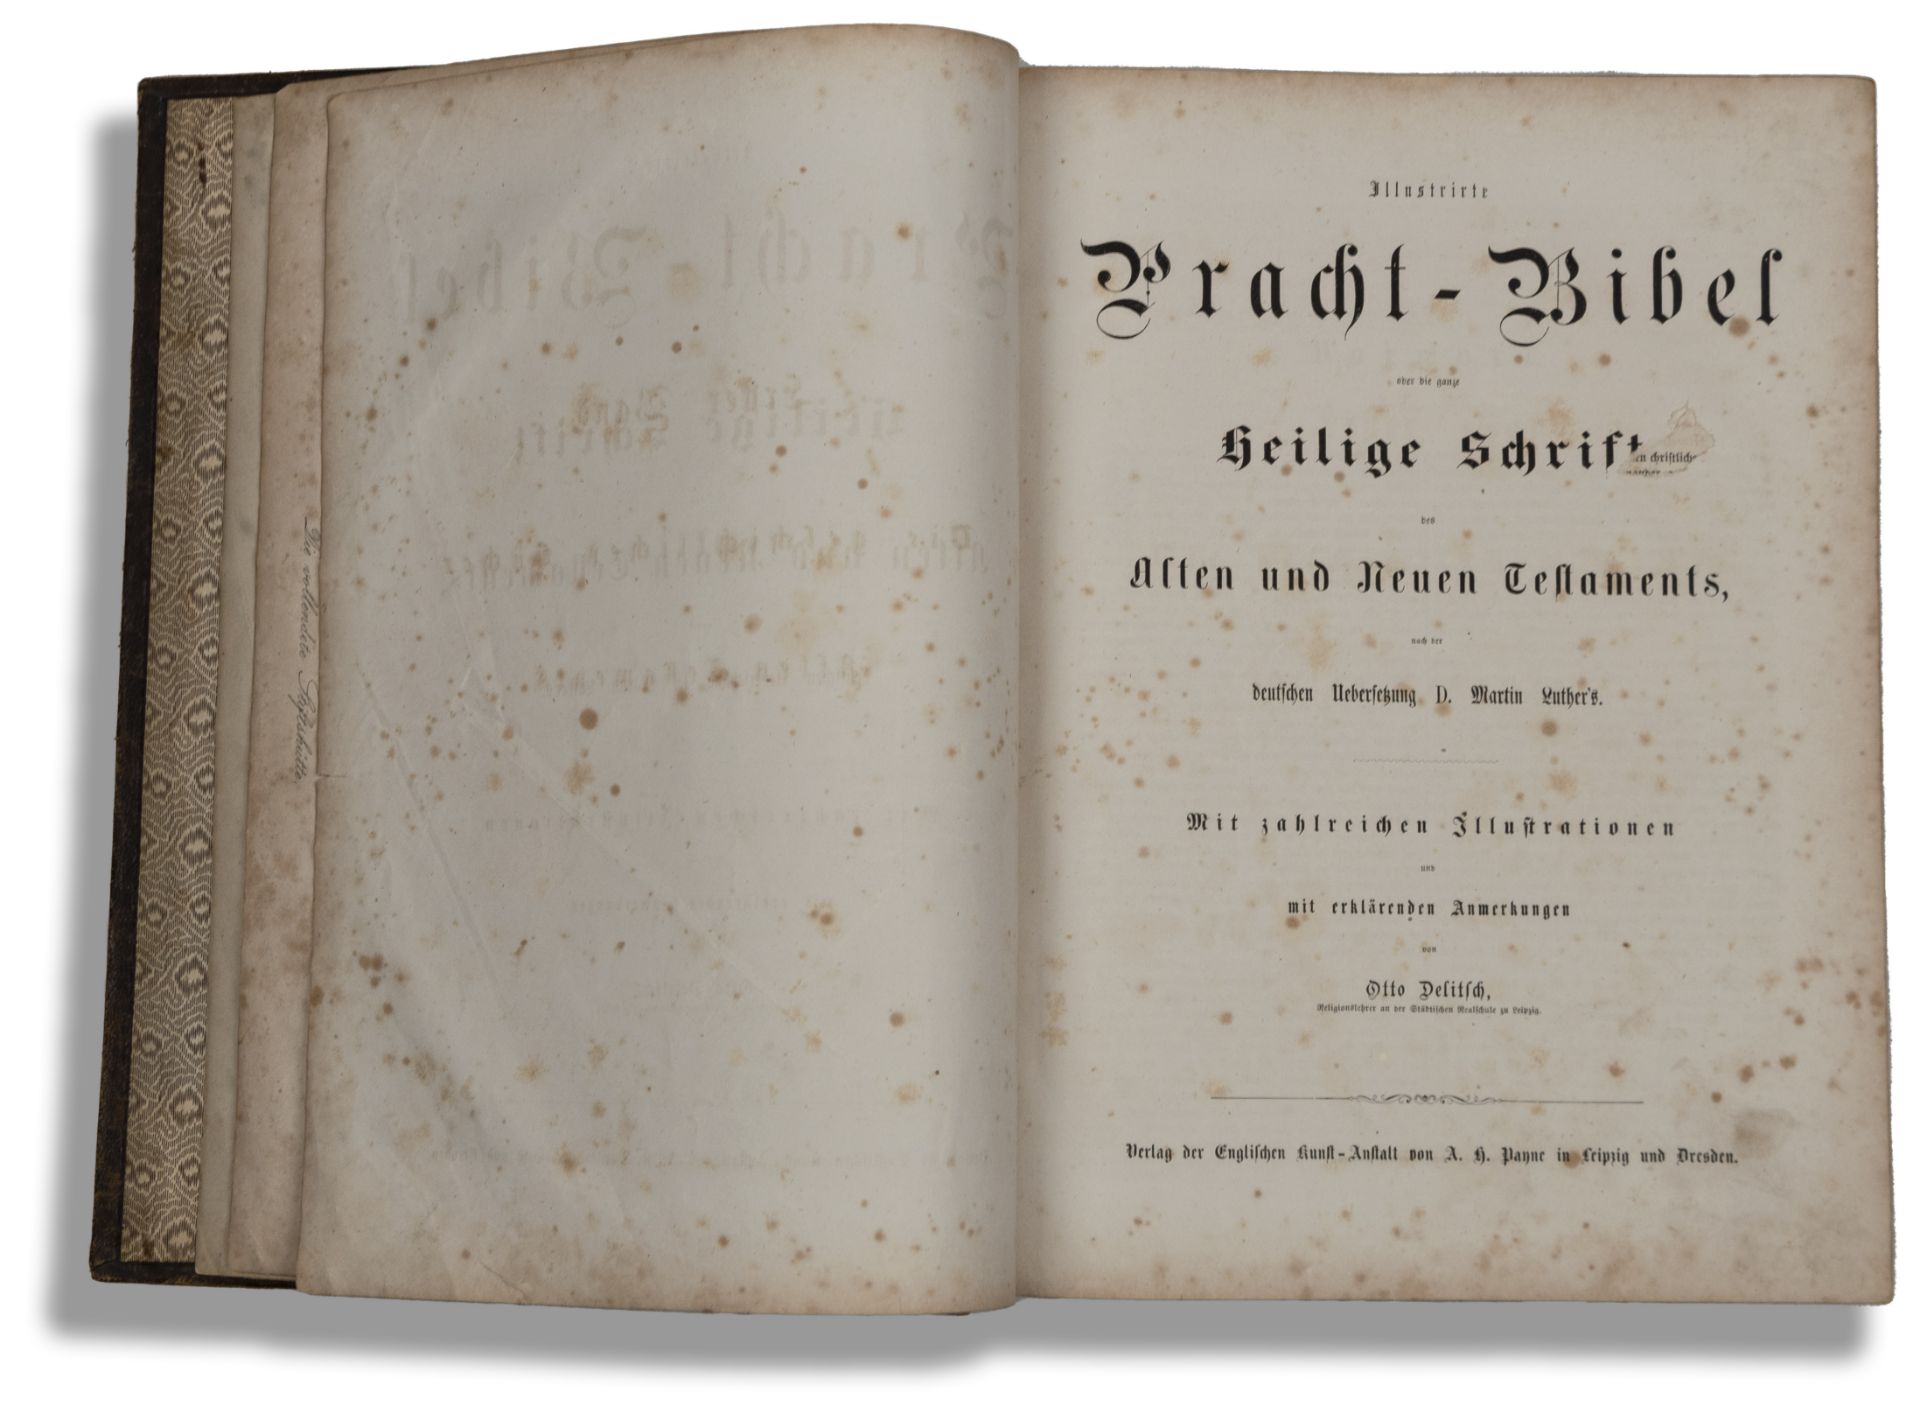 Illustrierte Prachtbibel, Otto Delitsch, 1862